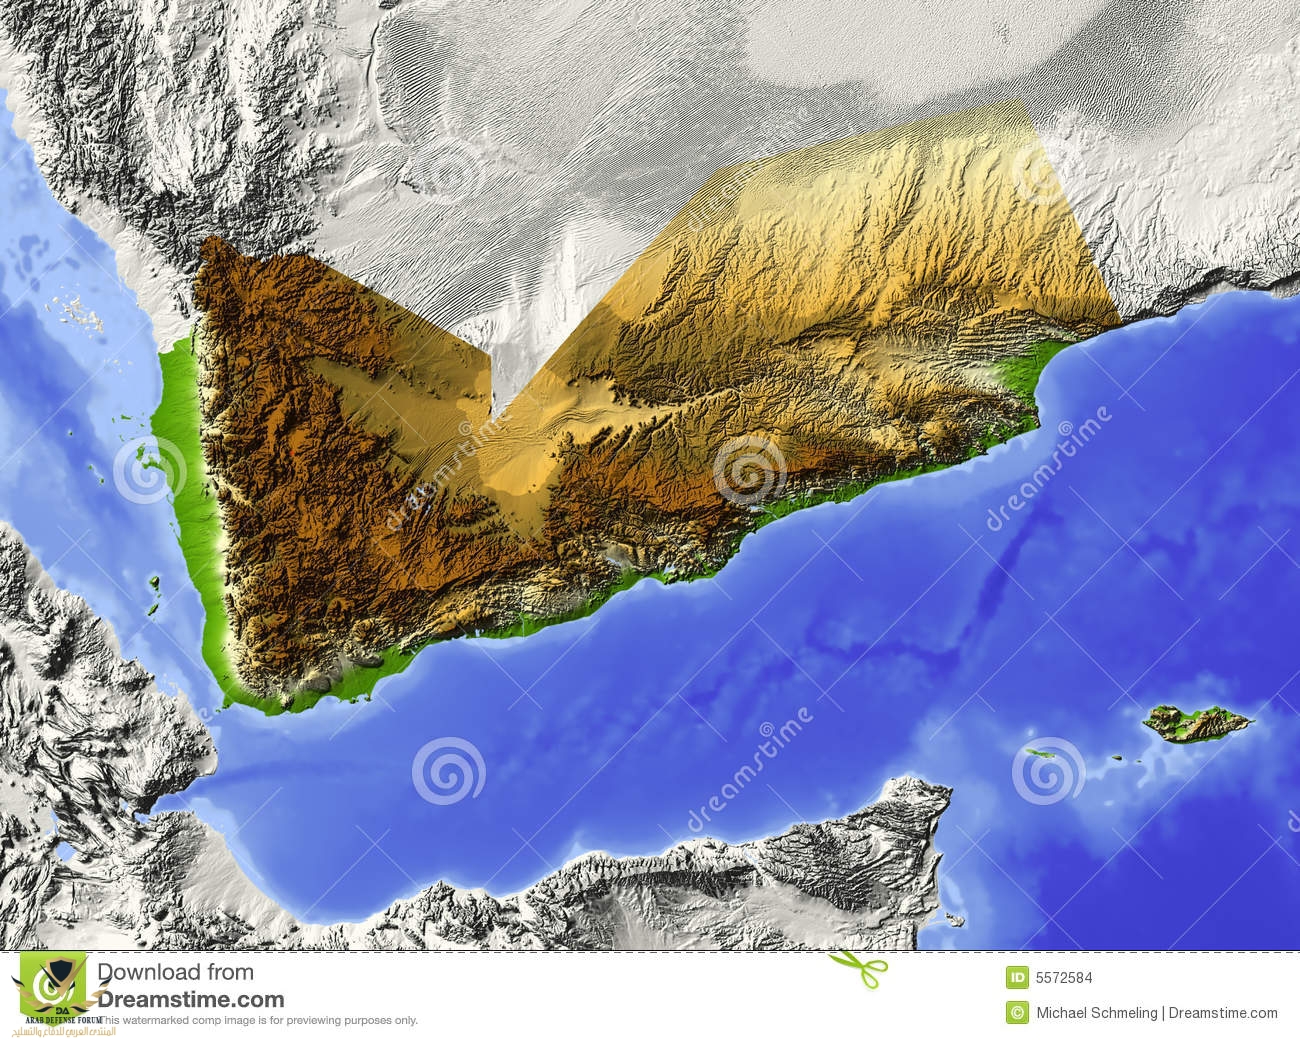 yemen-relief-map-5572584.jpg